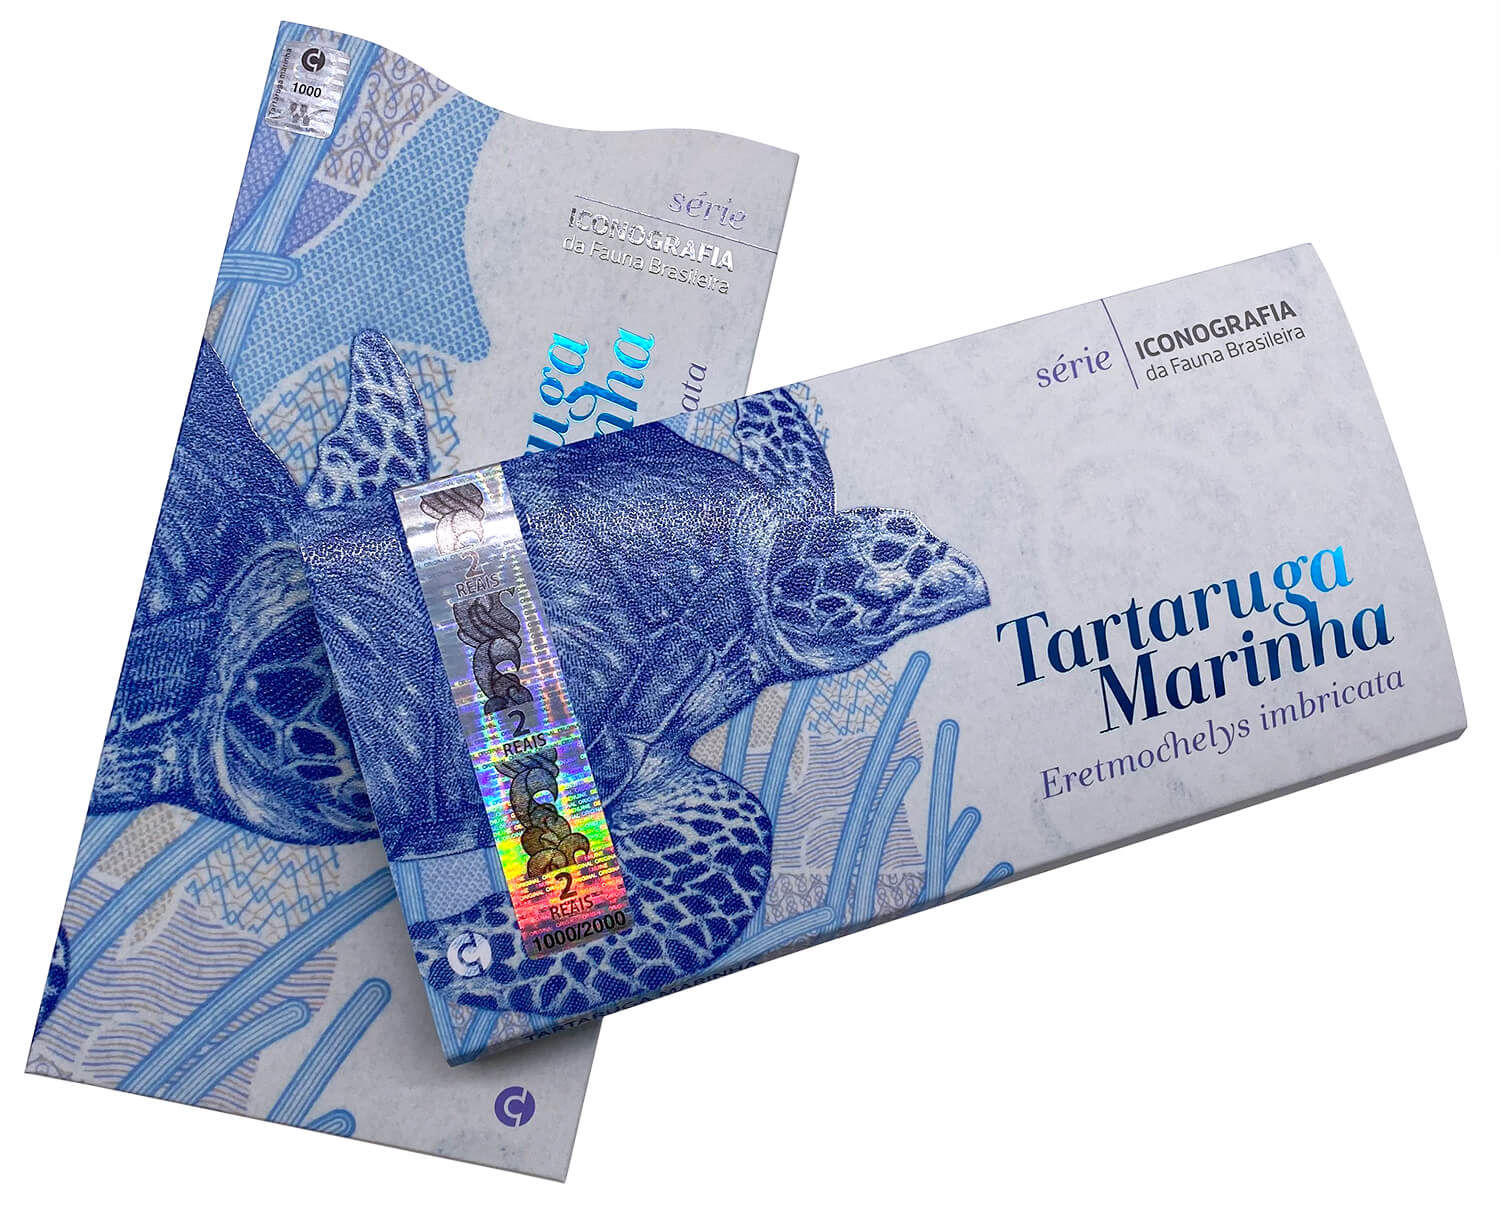 Folder + Box de Luxo da Série Iconografia da Fauna Brasileira Tartaruga Marinha Oficial AAMV